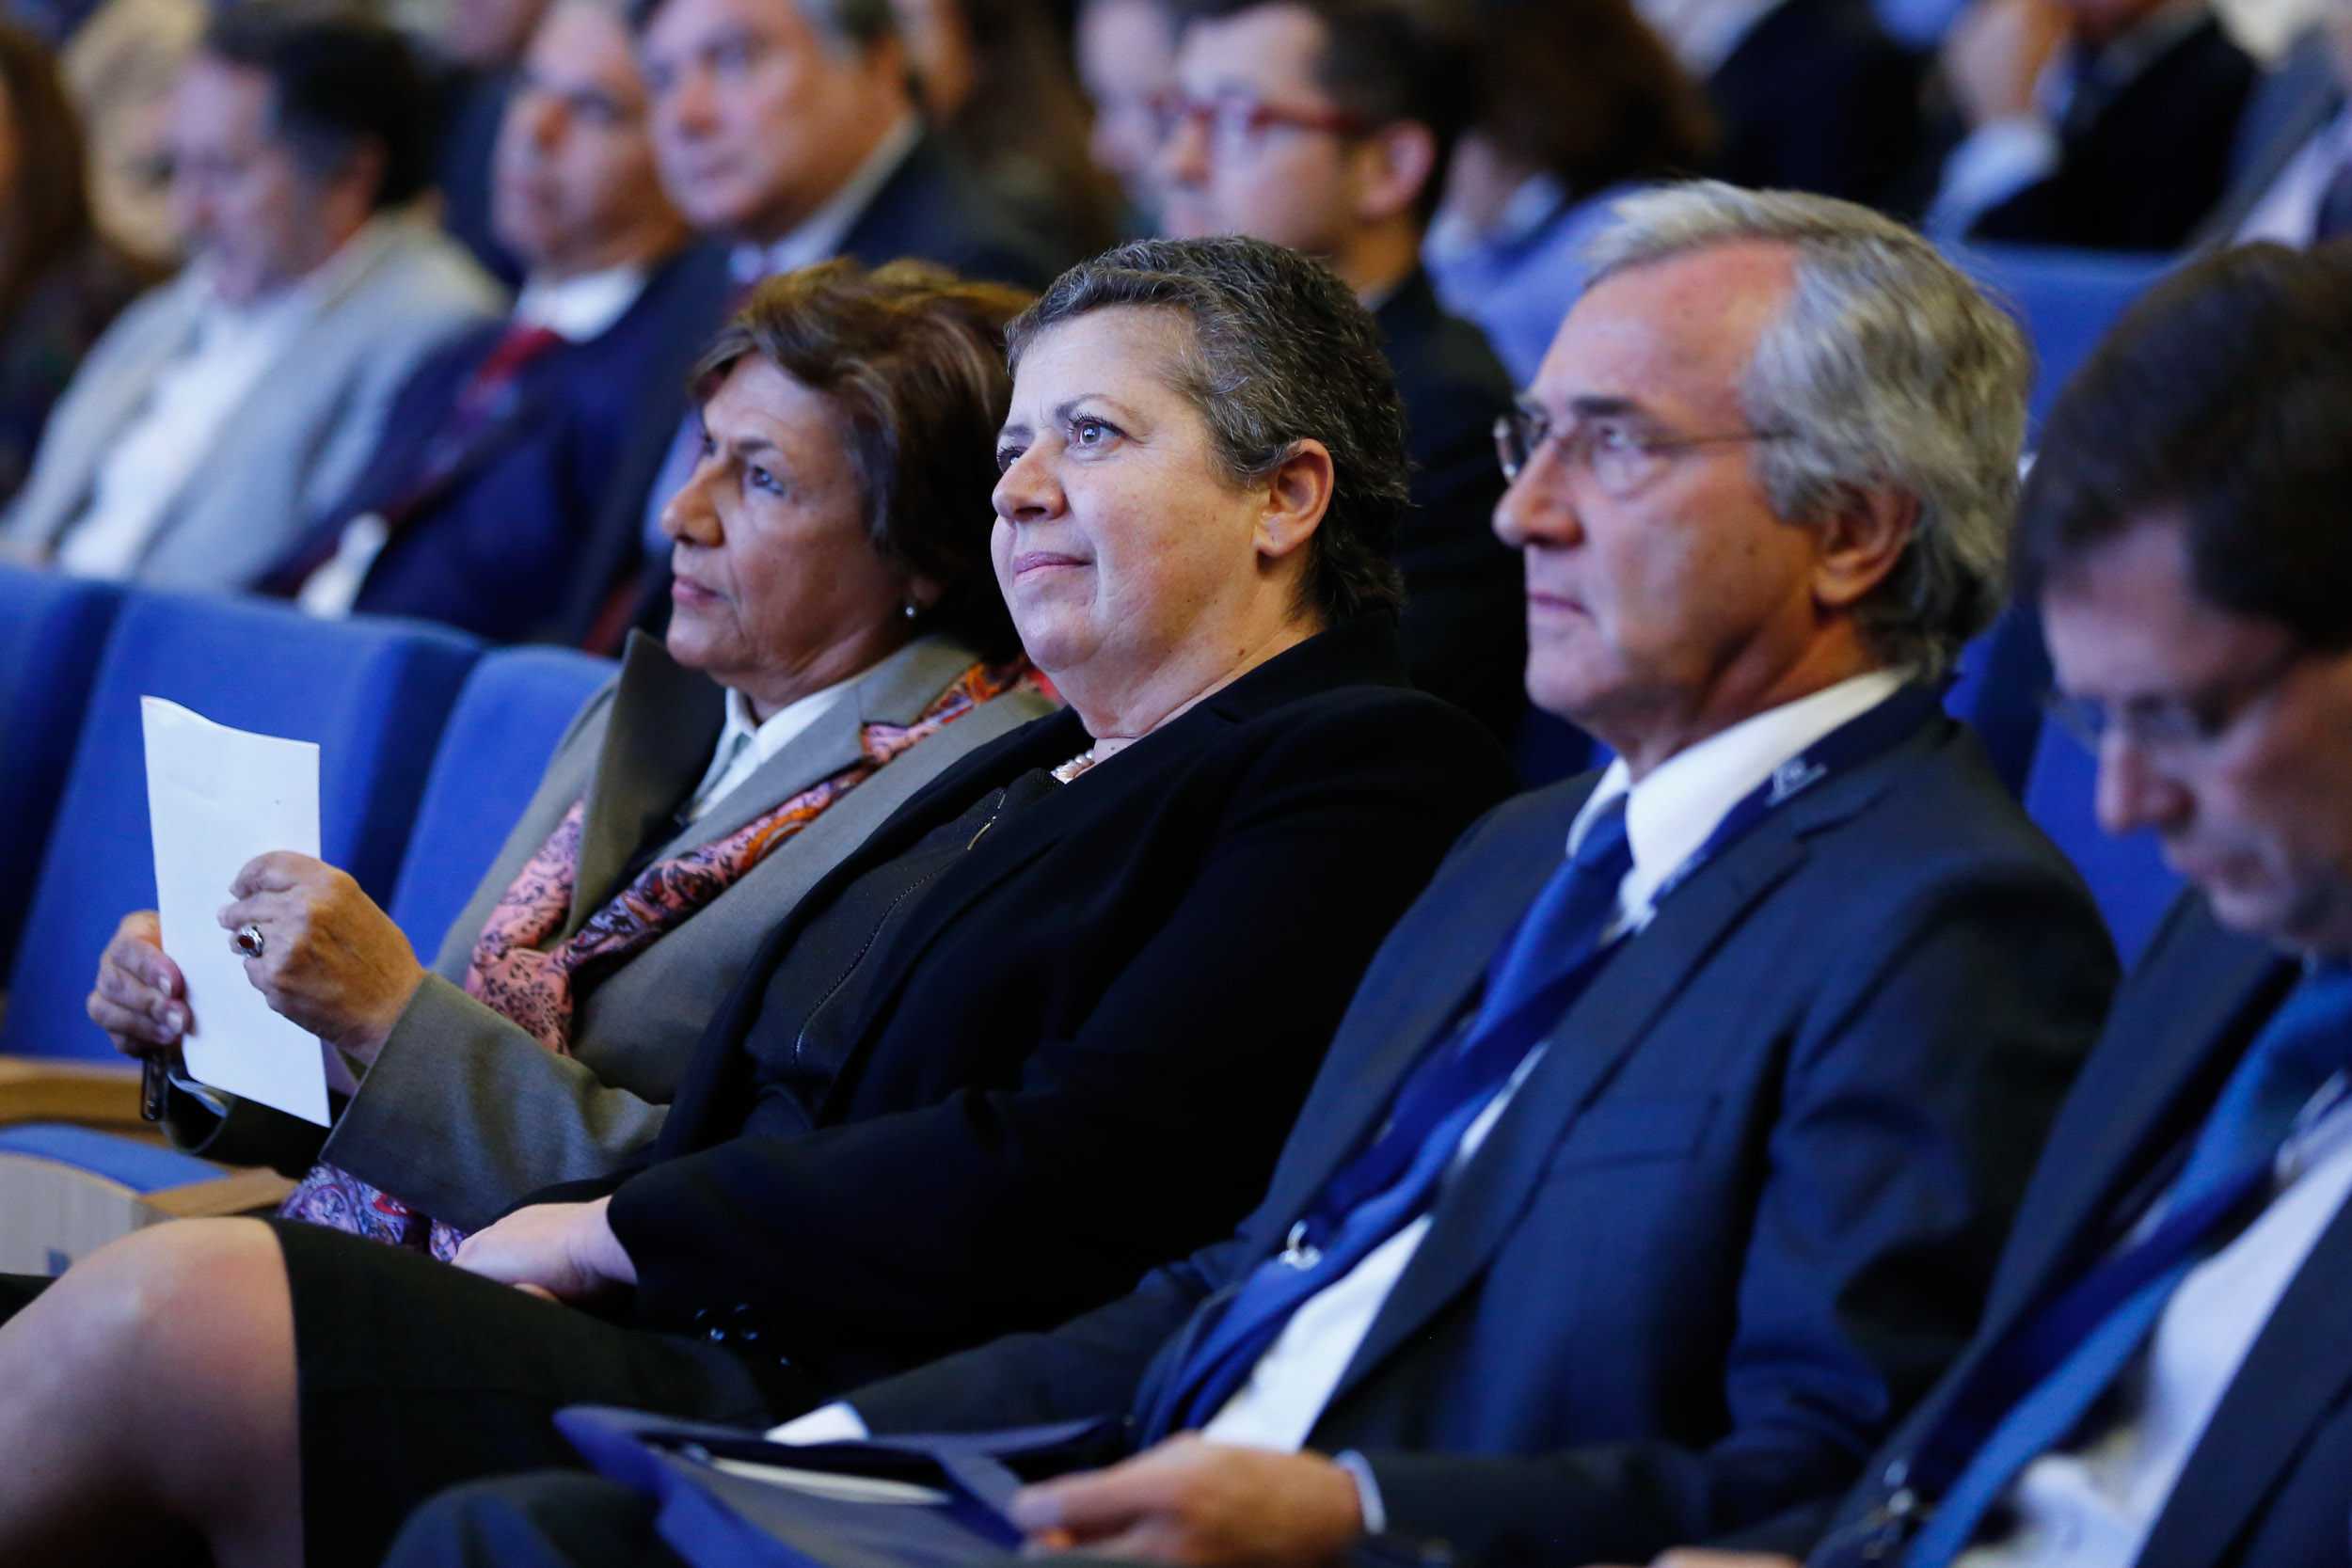 Conferência “Porto de Setúbal | Uma solução para a região de Lisboa” – mais capacidade, maior competitividade”